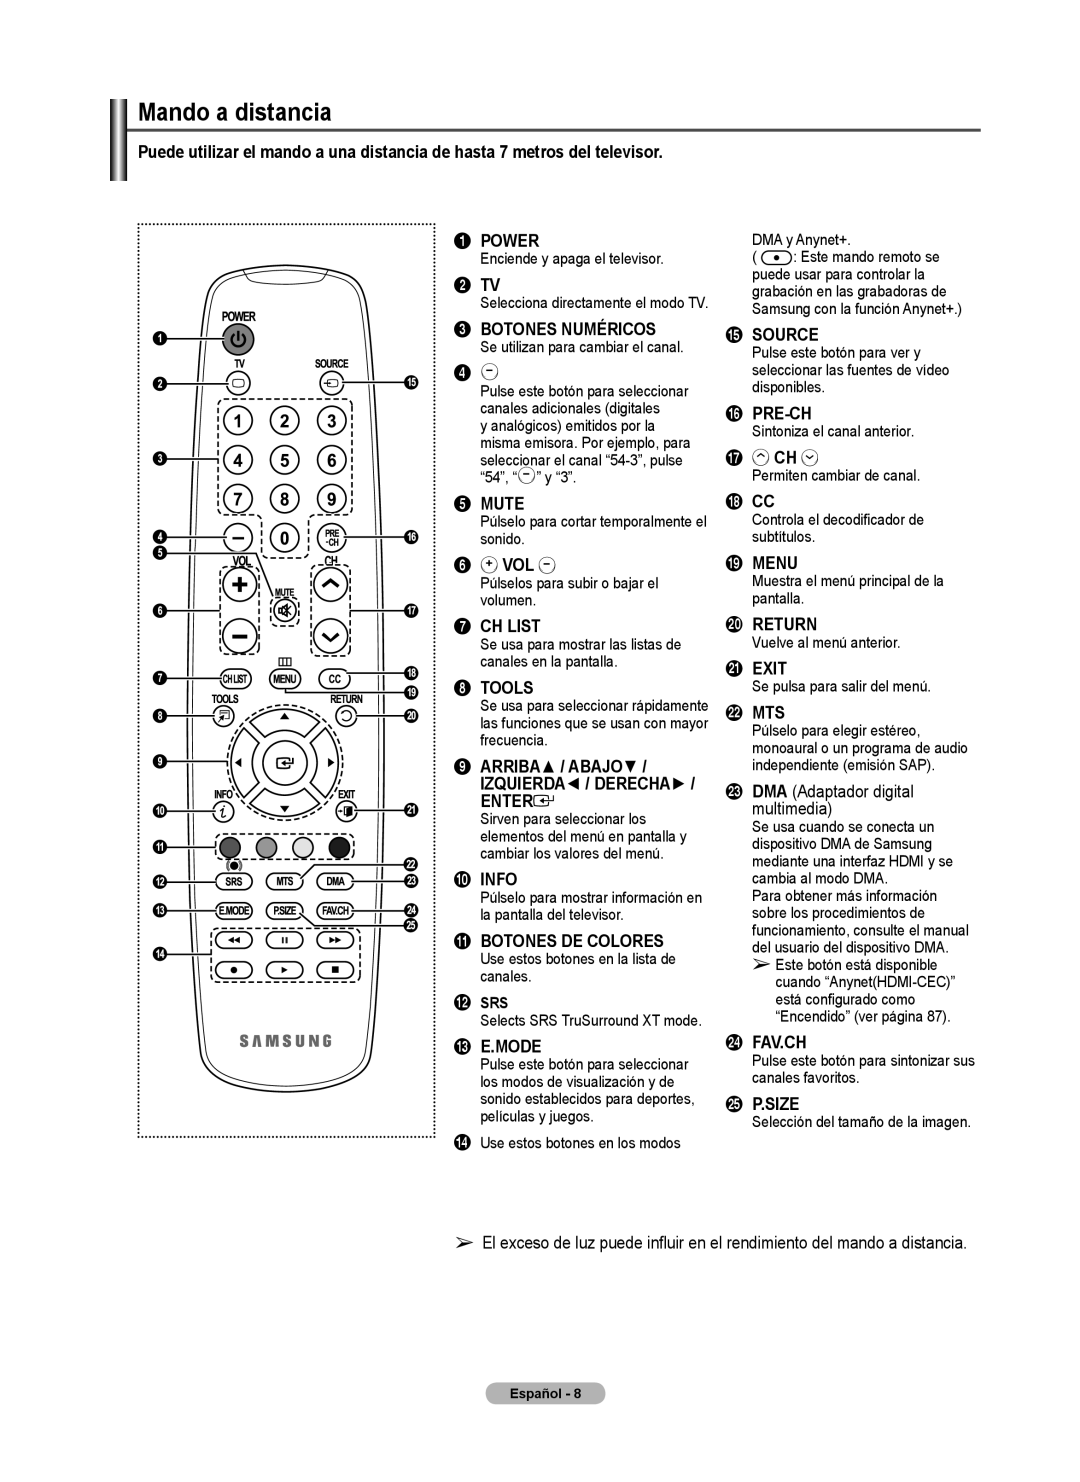 Samsung 460 Power, 2 TV, Botones Numéricos, Mute, Vol, Ch List, Tools, Enter, Info, Botones De Colores, # E.Mode, Source 